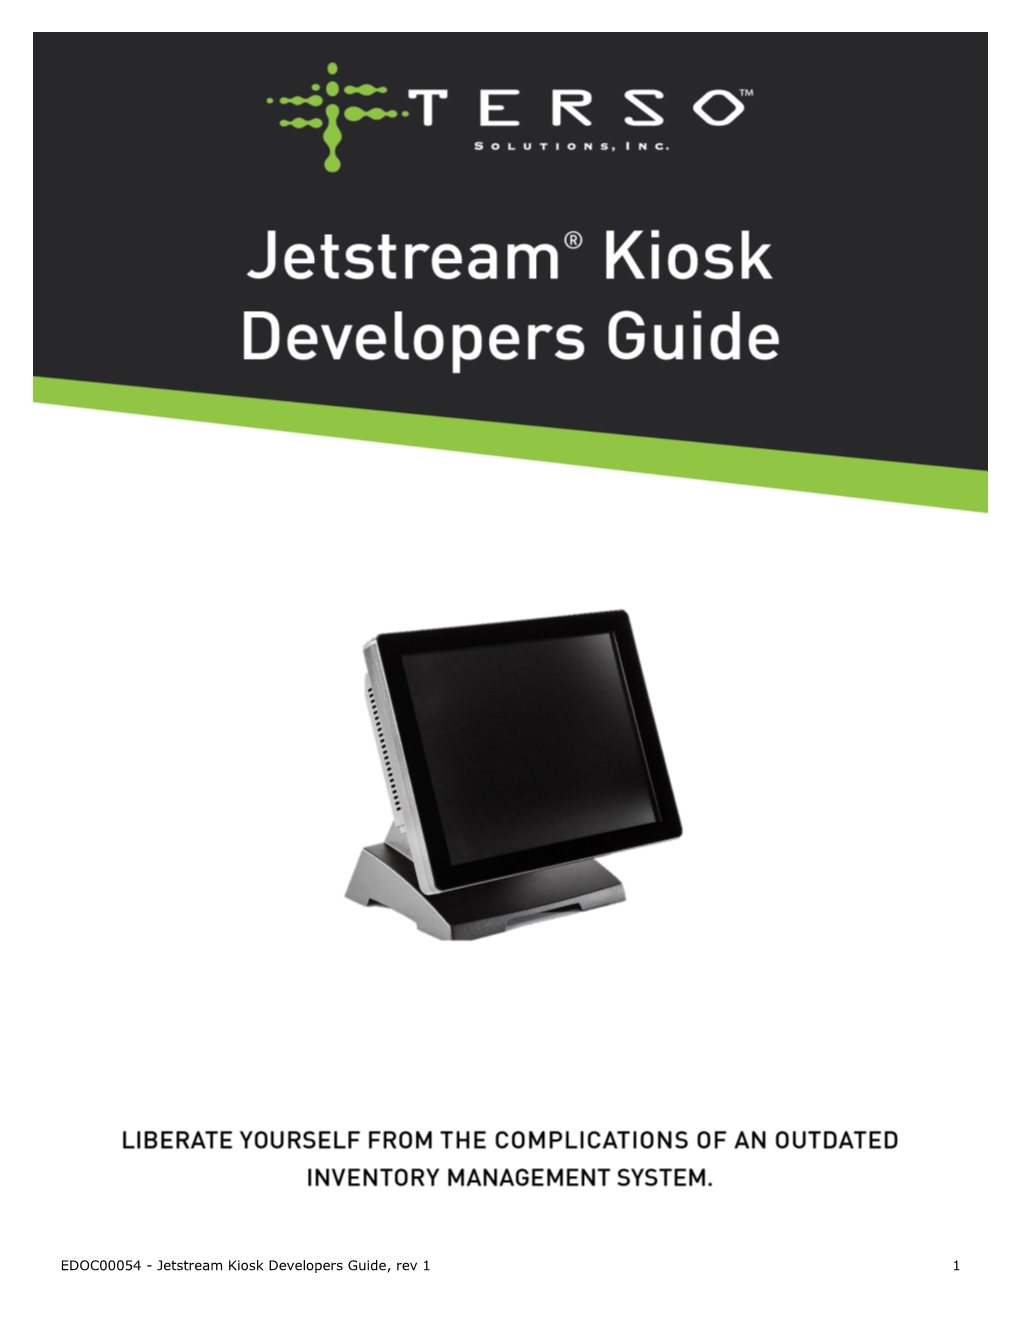 Jetstream Kiosk Developers Guide, Rev 1 1 Table of Contents